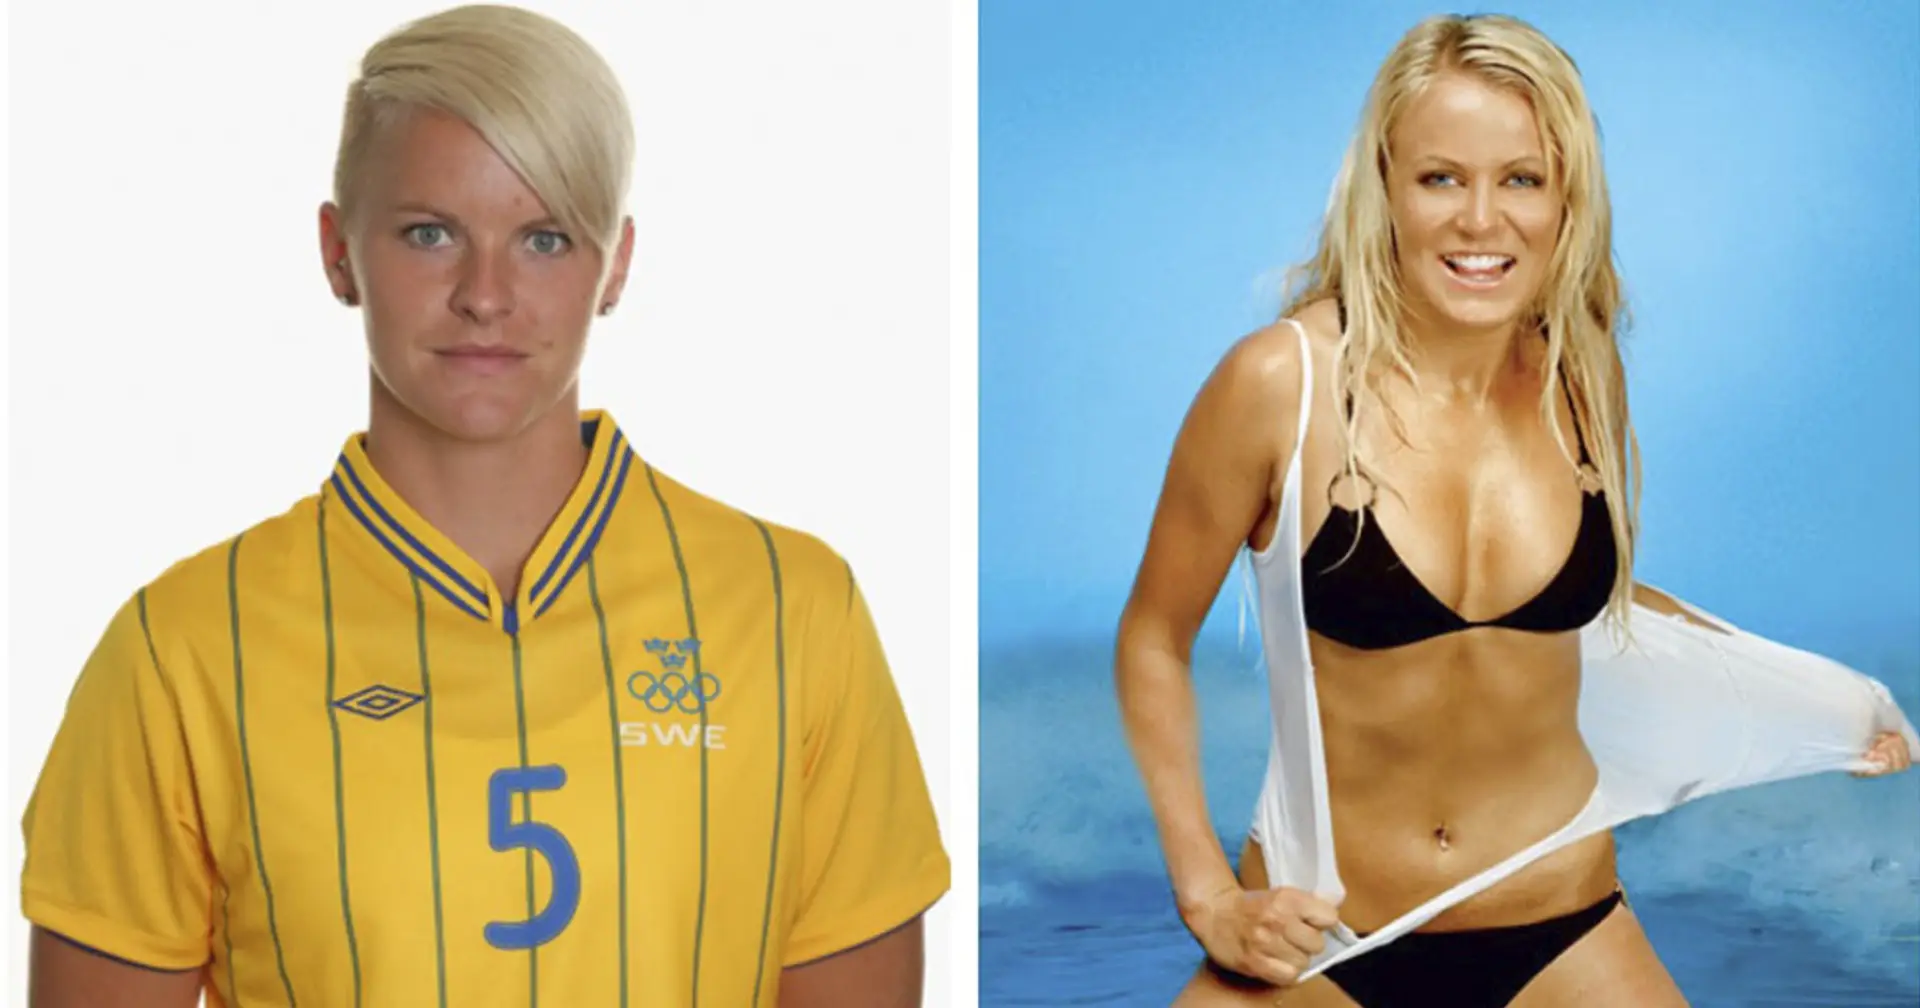 Schweden gewann Bronze bei der WM 2011: Vor dem Turnier mussten alle Spielerinnen ihre Genitalien zeigen 😱